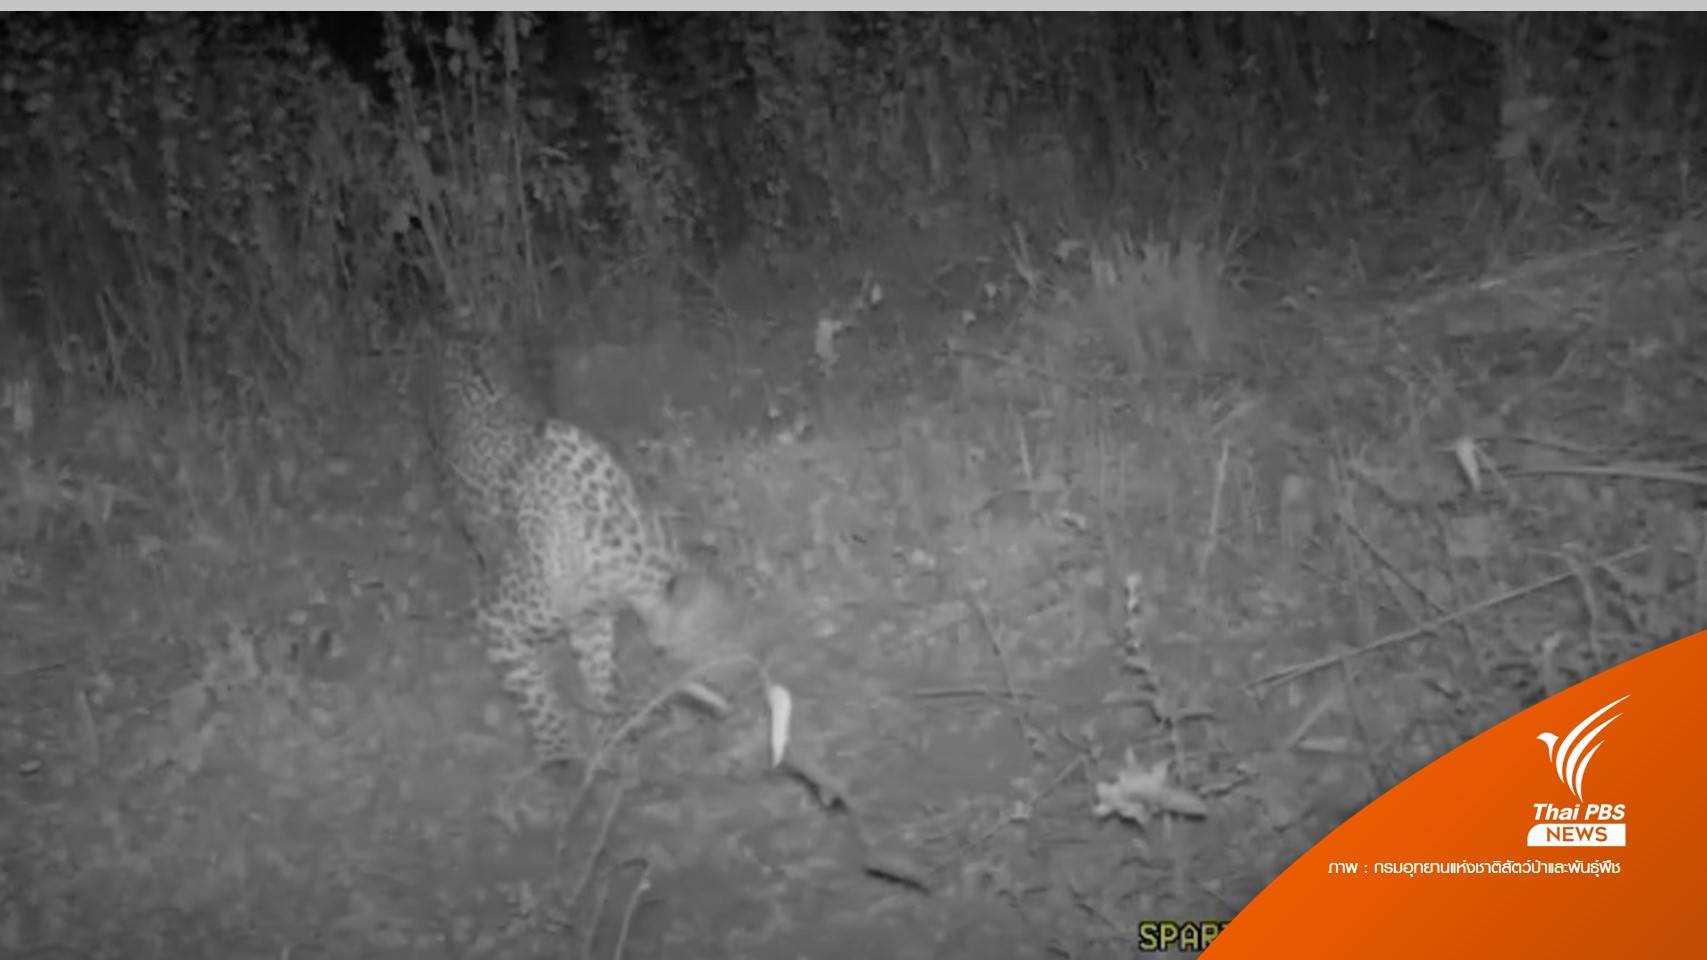 ครั้งแรก! กล้องถ่ายภาพสัตว์ถ่าย "เสือดาว" ในป่าเชียงดาว